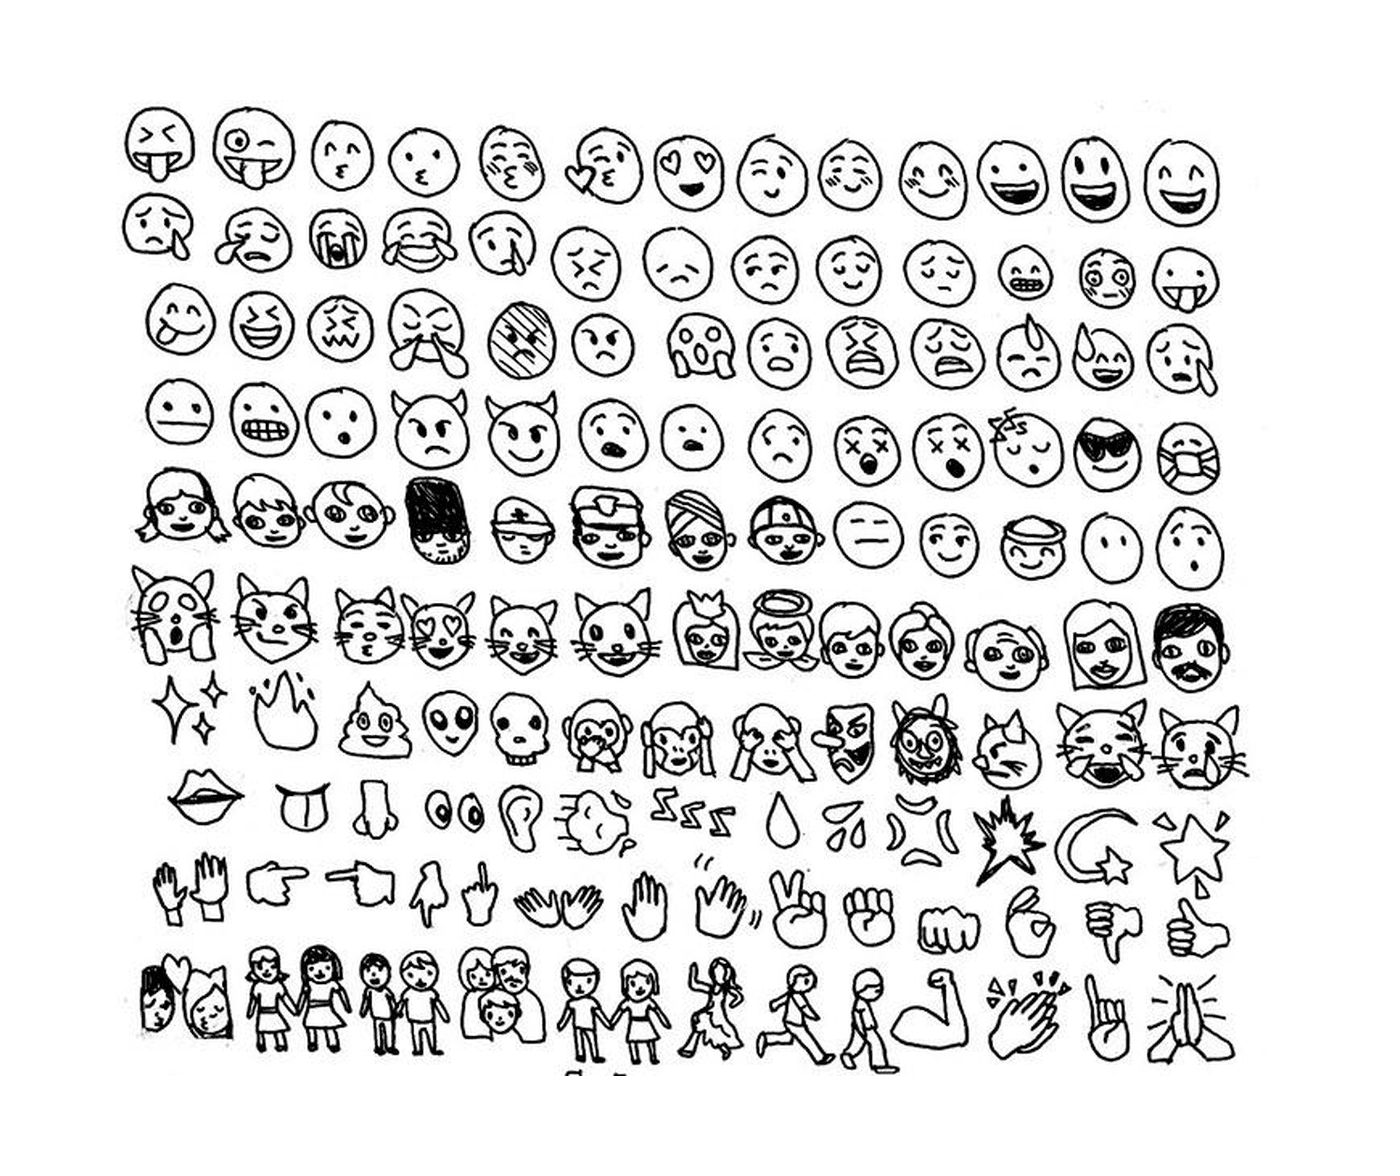   Un ensemble de différents visages dessinés sur du papier 